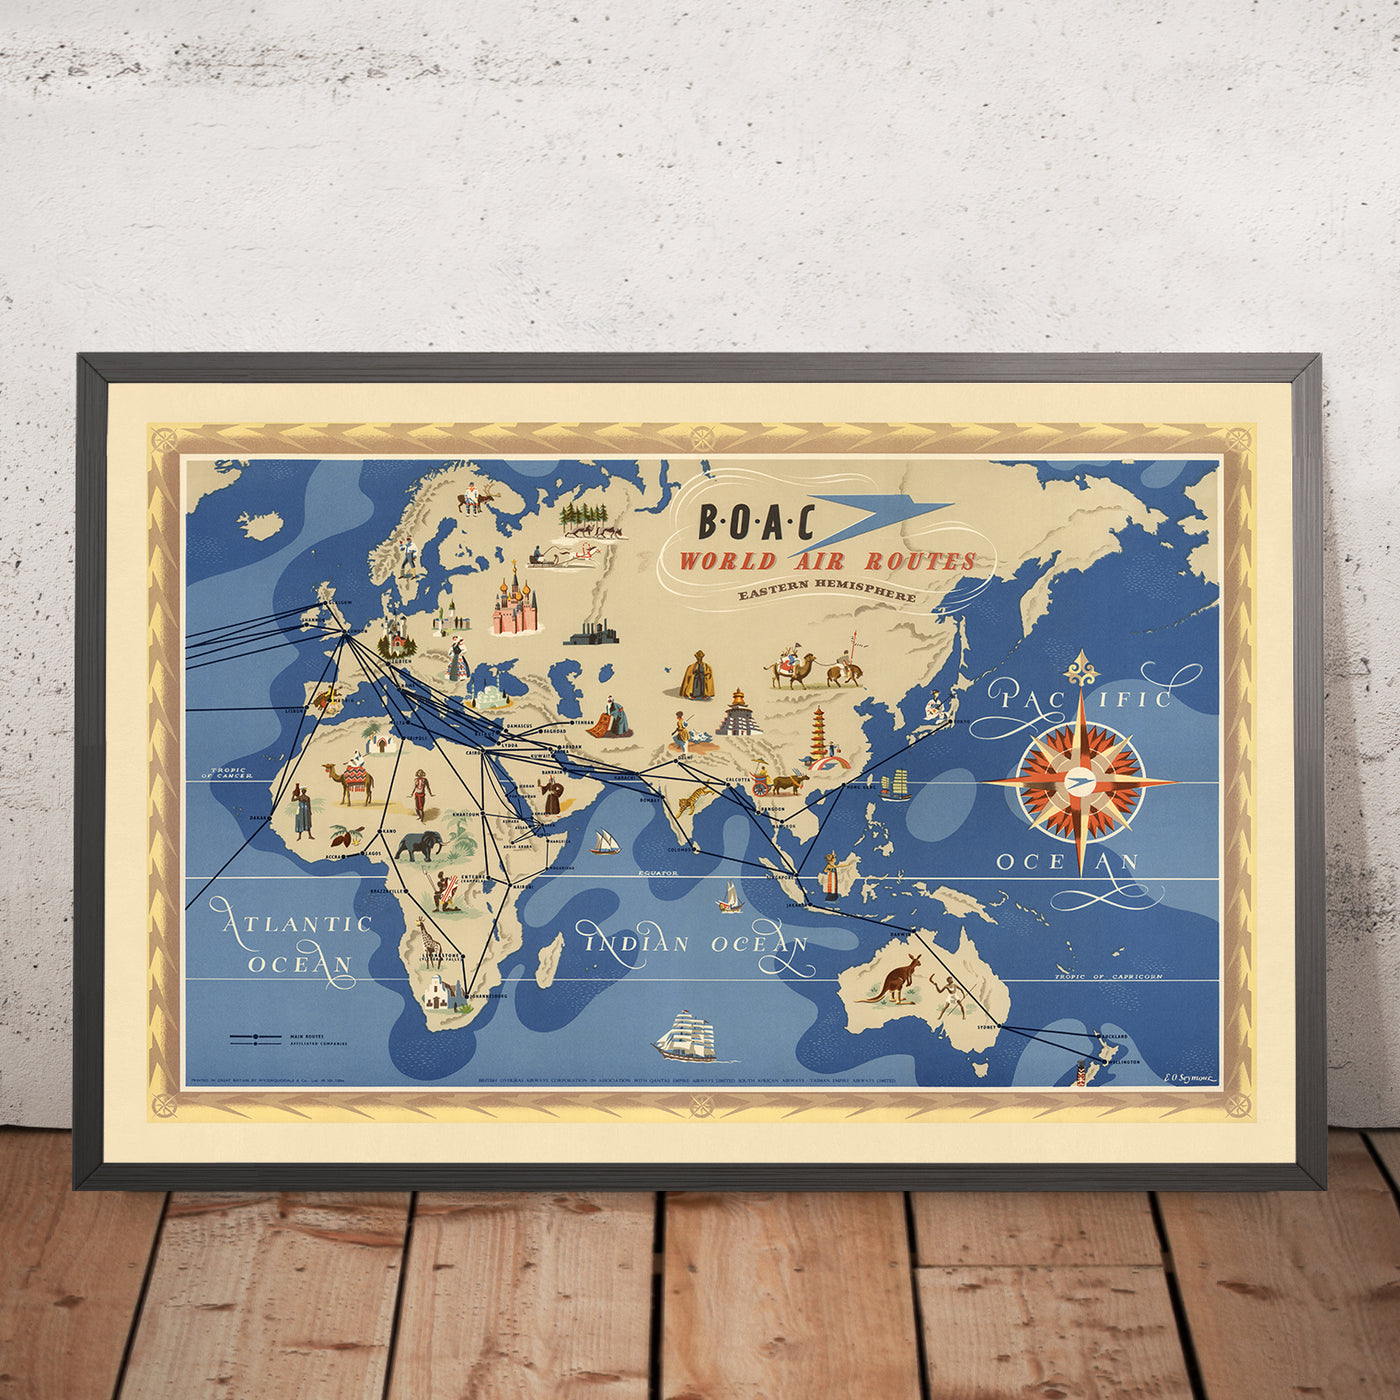 Mapa del Viejo Mundo de rutas aéreas del hemisferio oriental por BOAC, 1949: ilustraciones pictóricas, estilo temático, representación de la aviación de mediados del siglo XX